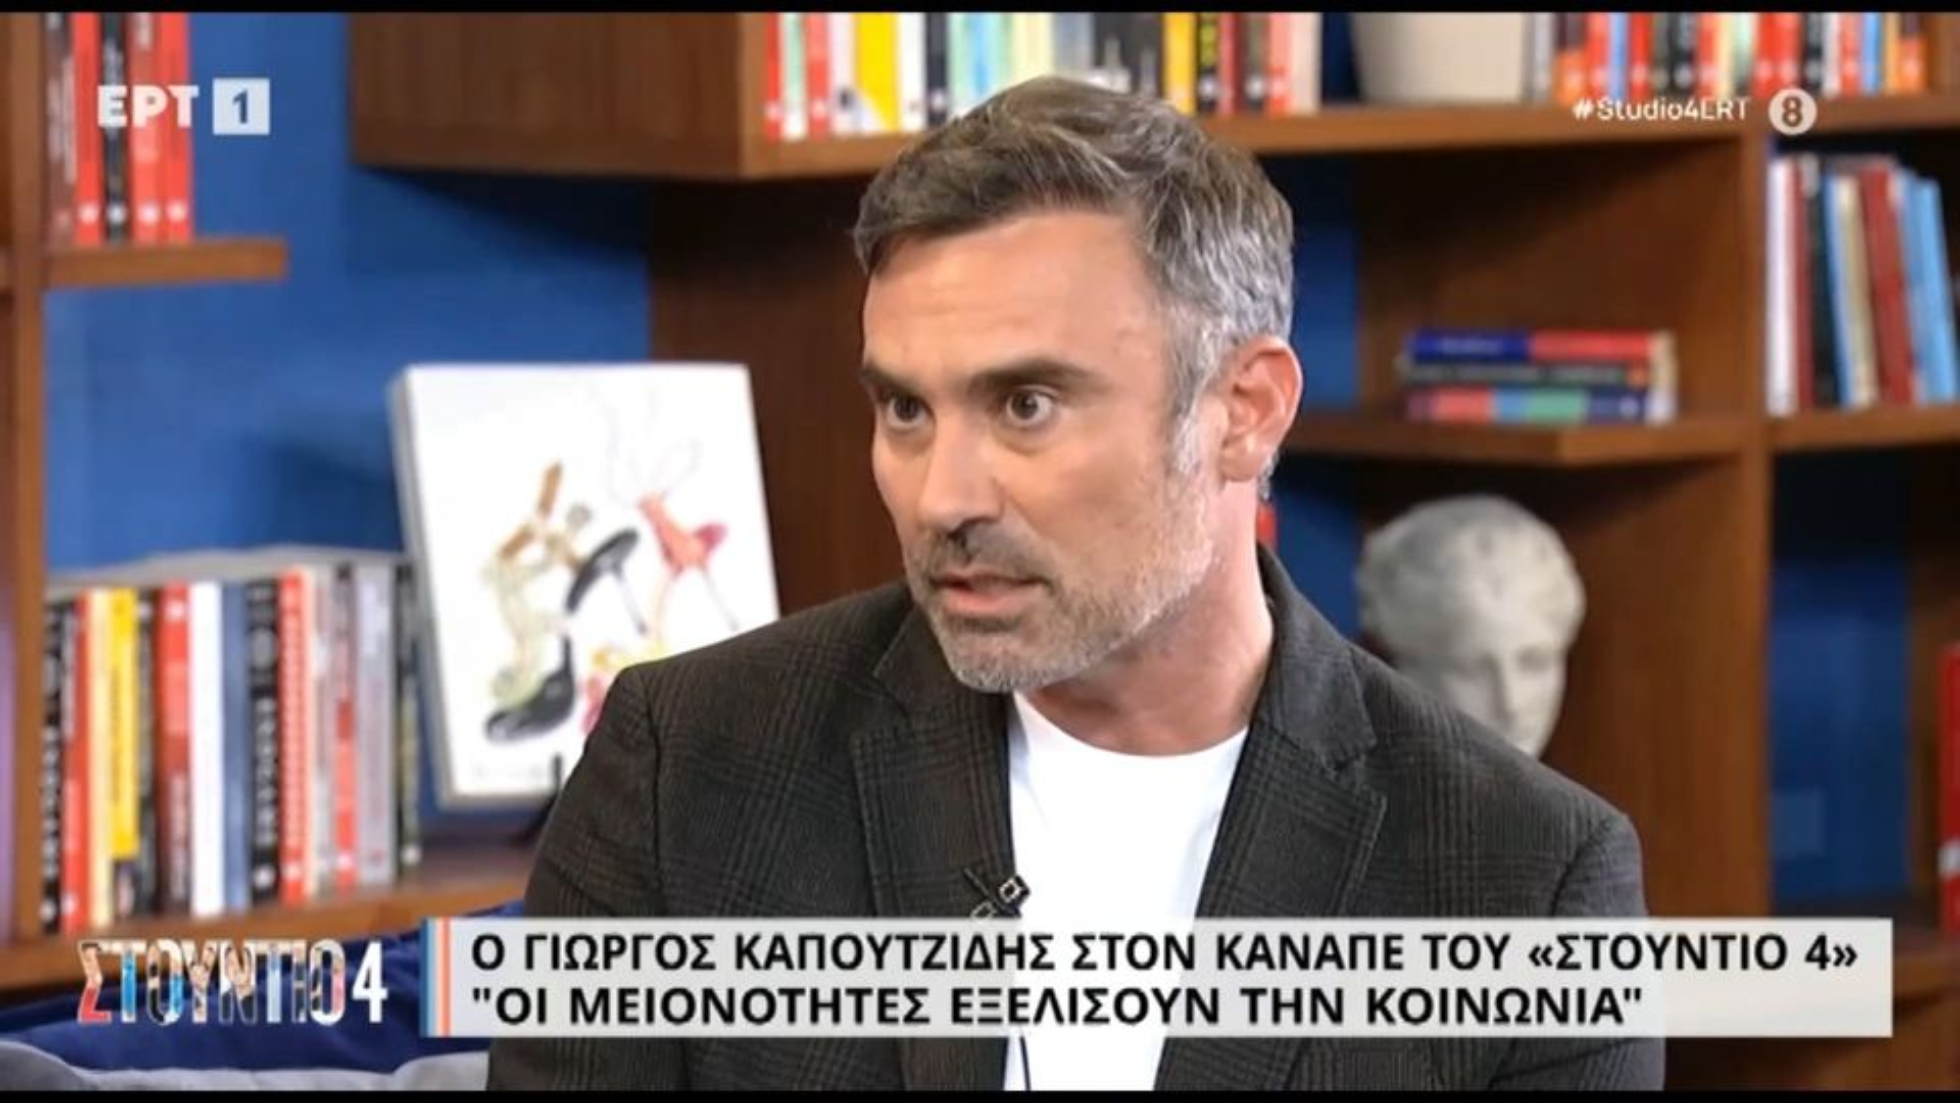 Γιώργος Καπουτζίδης: «Με στεναχωρεί ότι ήταν κοινό μου και με εκτιμούσε κάποτε» (VIDEO)